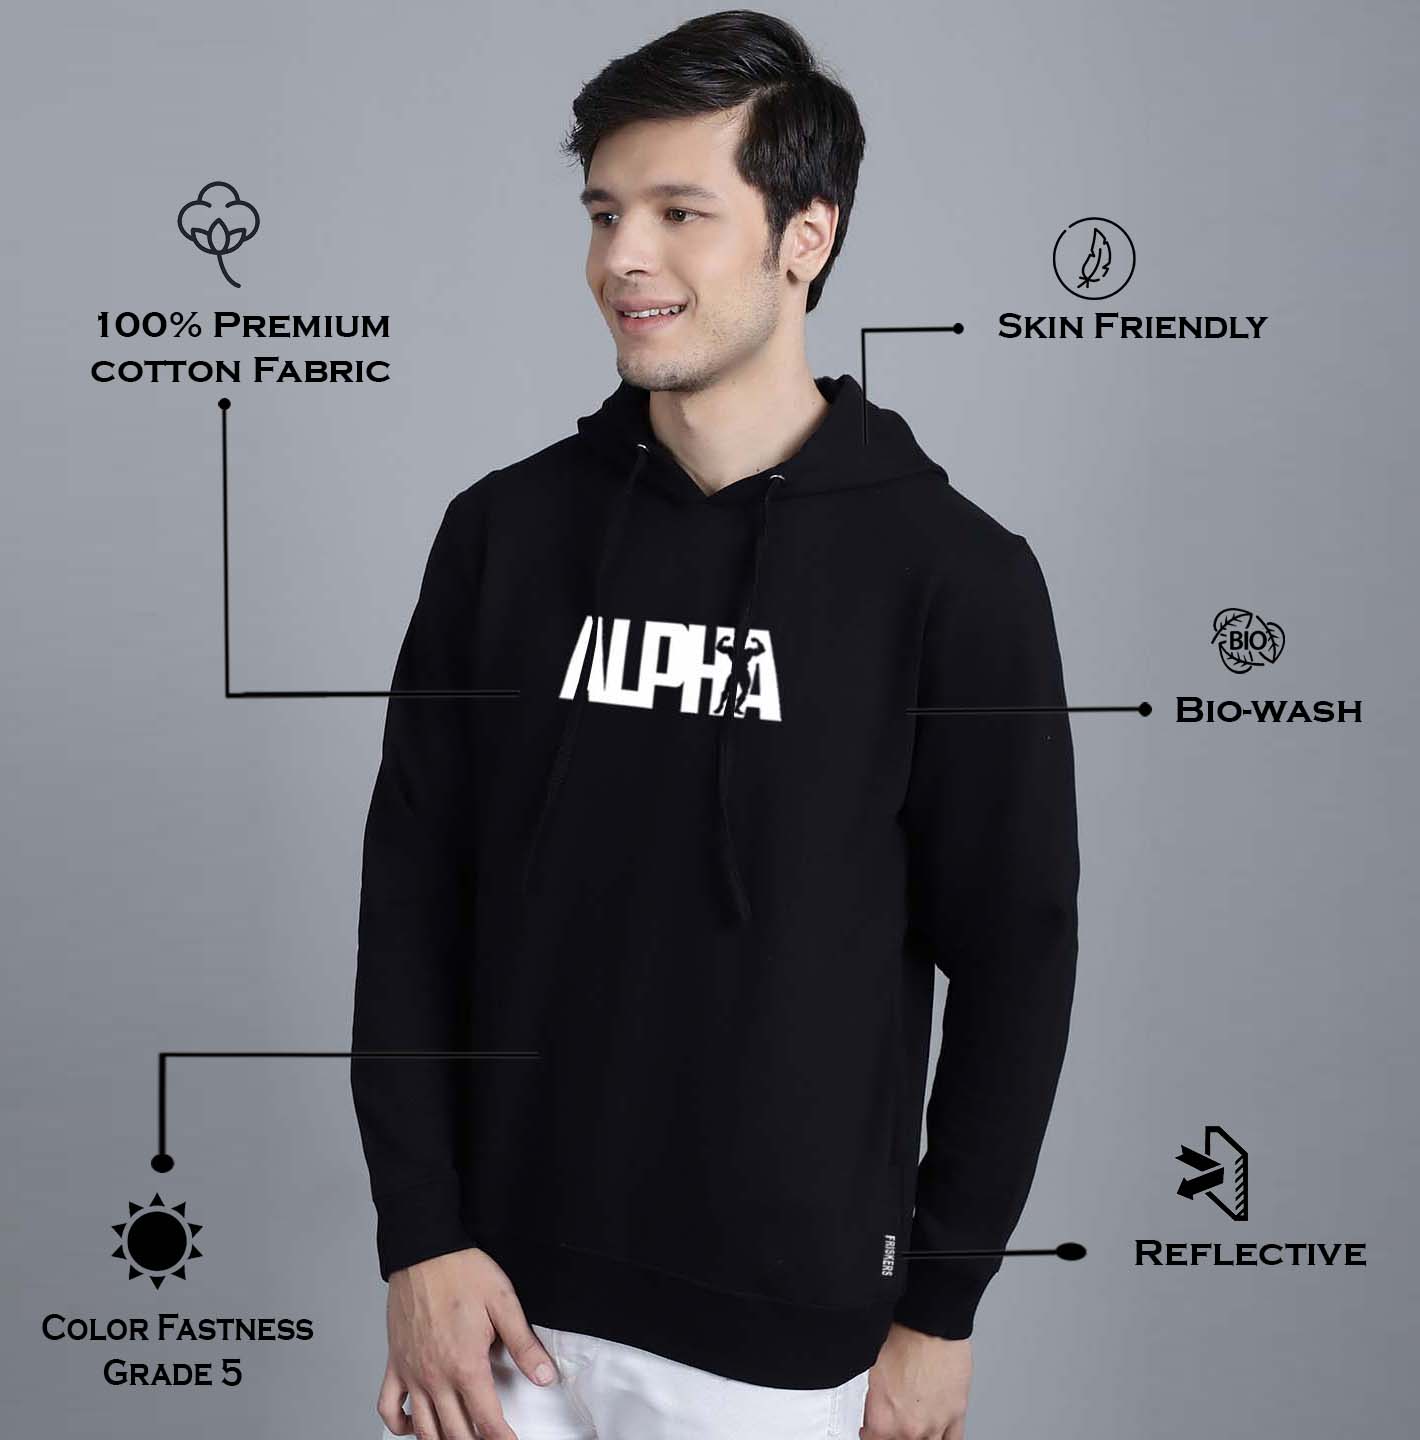 Men's Alpha Full Sleeves Hoody T-Shirt - Friskers